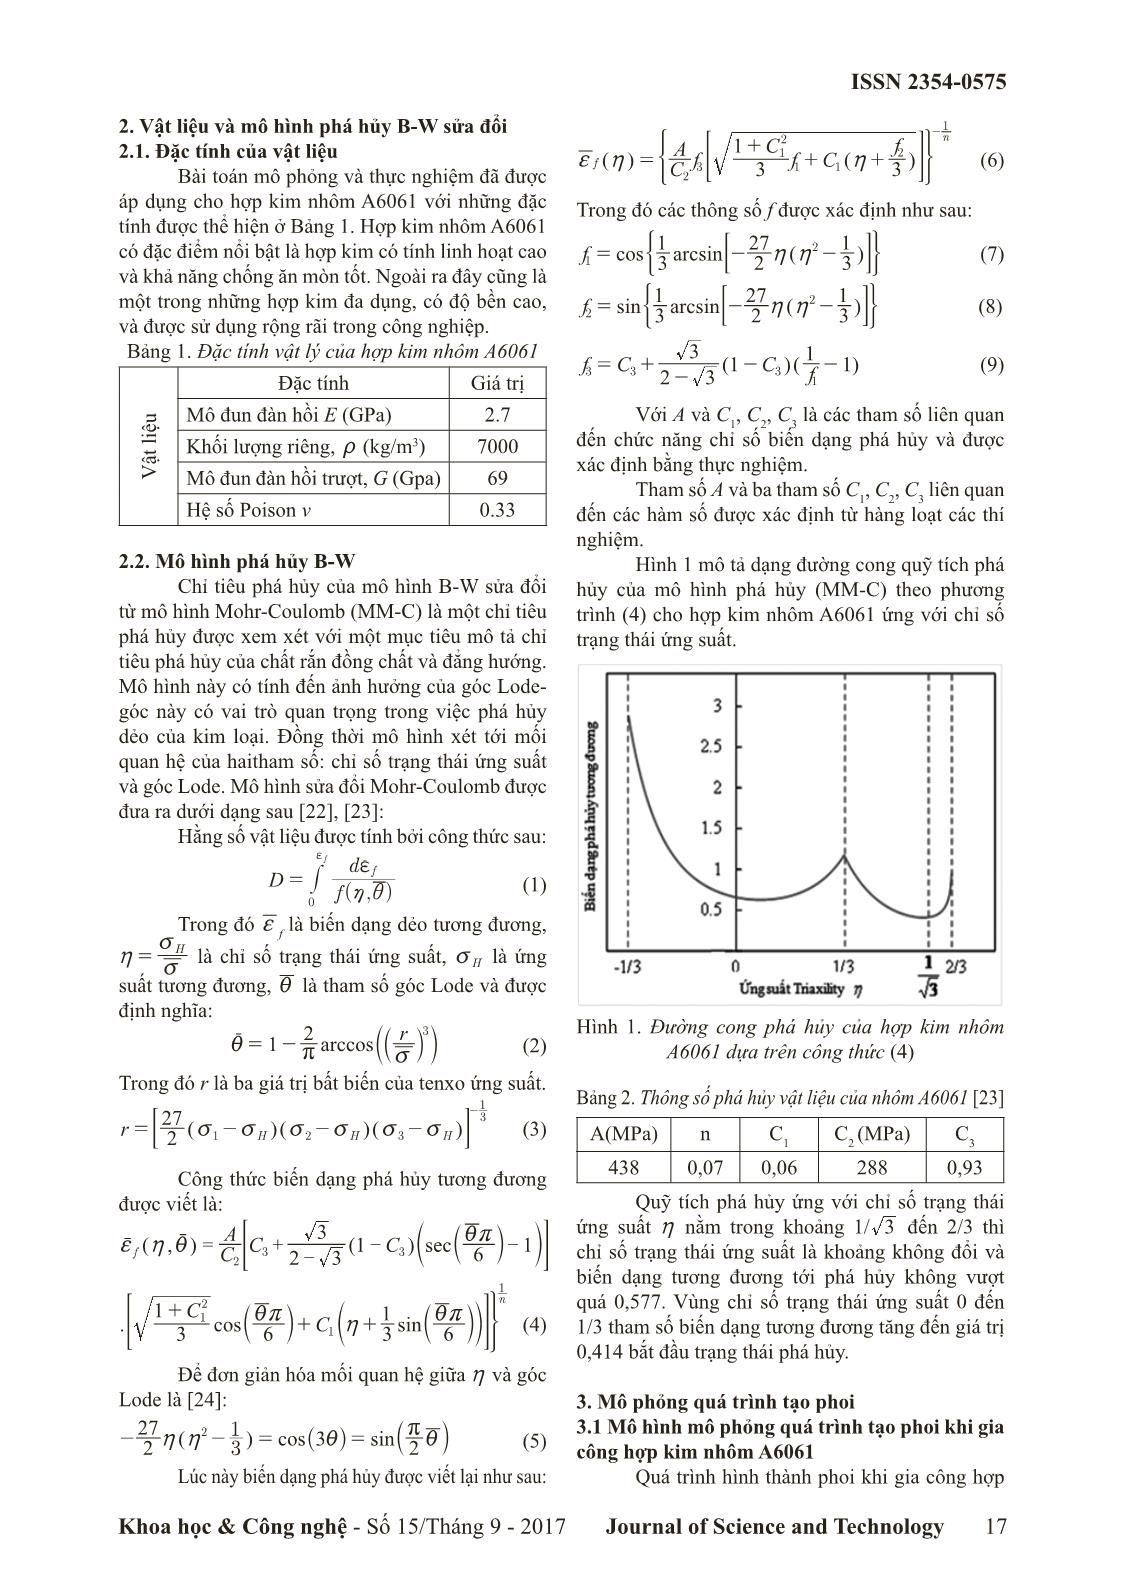 Nghiên cứu sự biến dạng của phoi khi mô phỏng quá trình gia công hợp kim nhôm A6061 trang 2